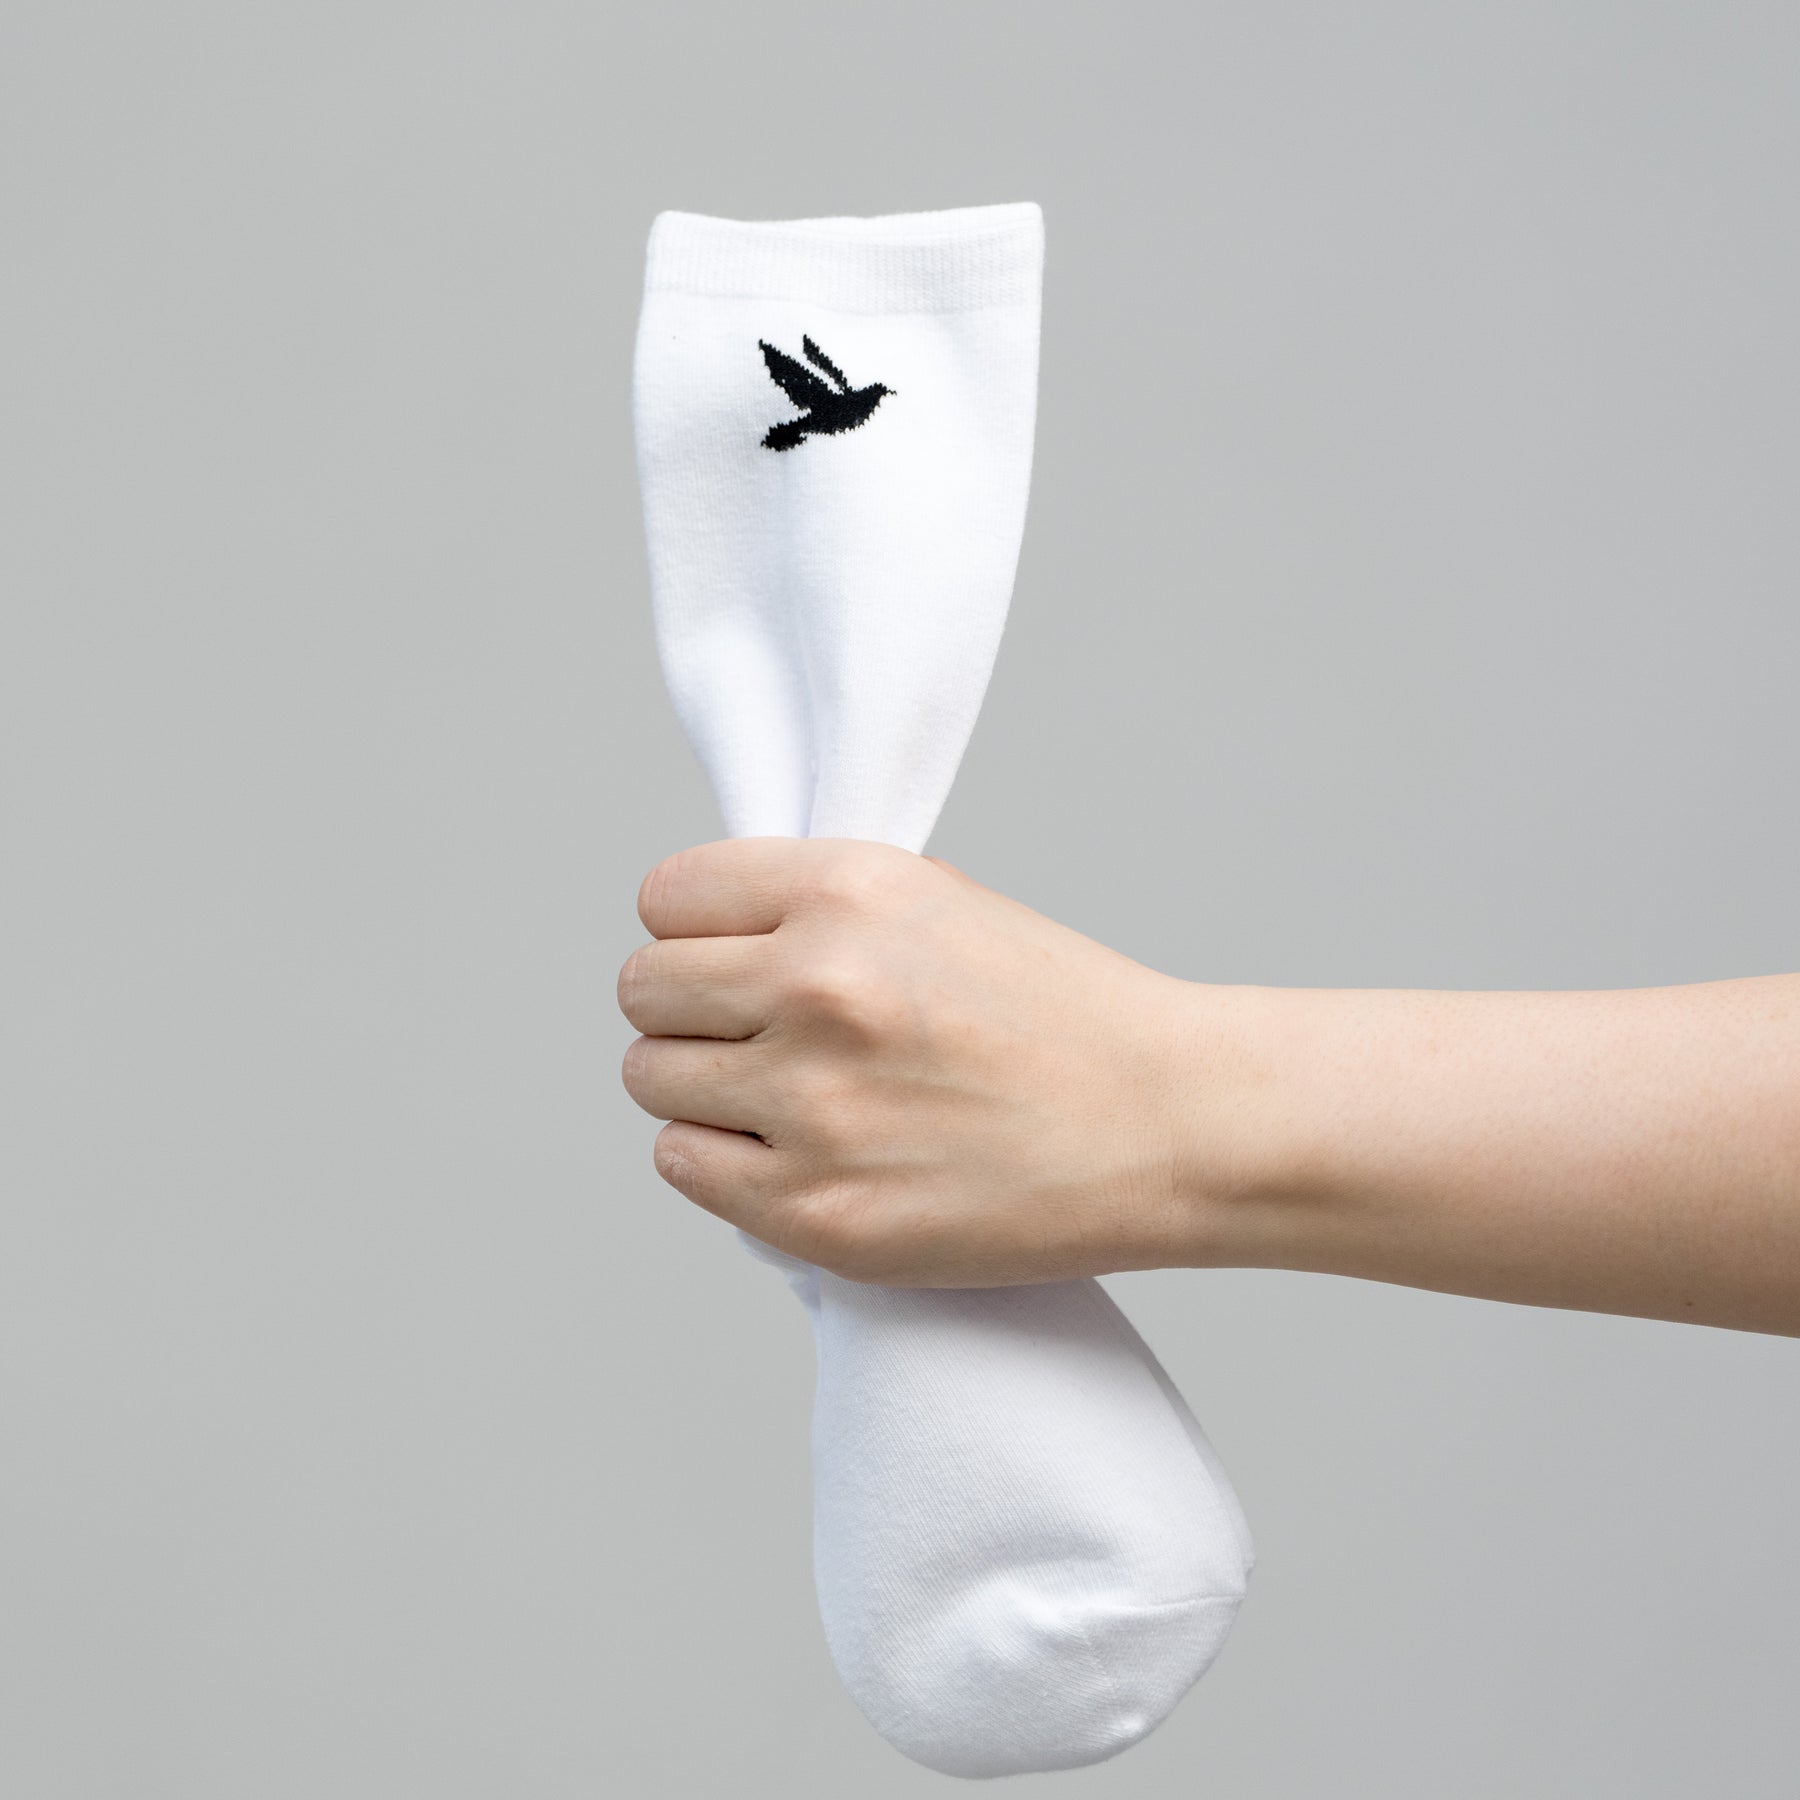 Peace Socks (2 Pairs)